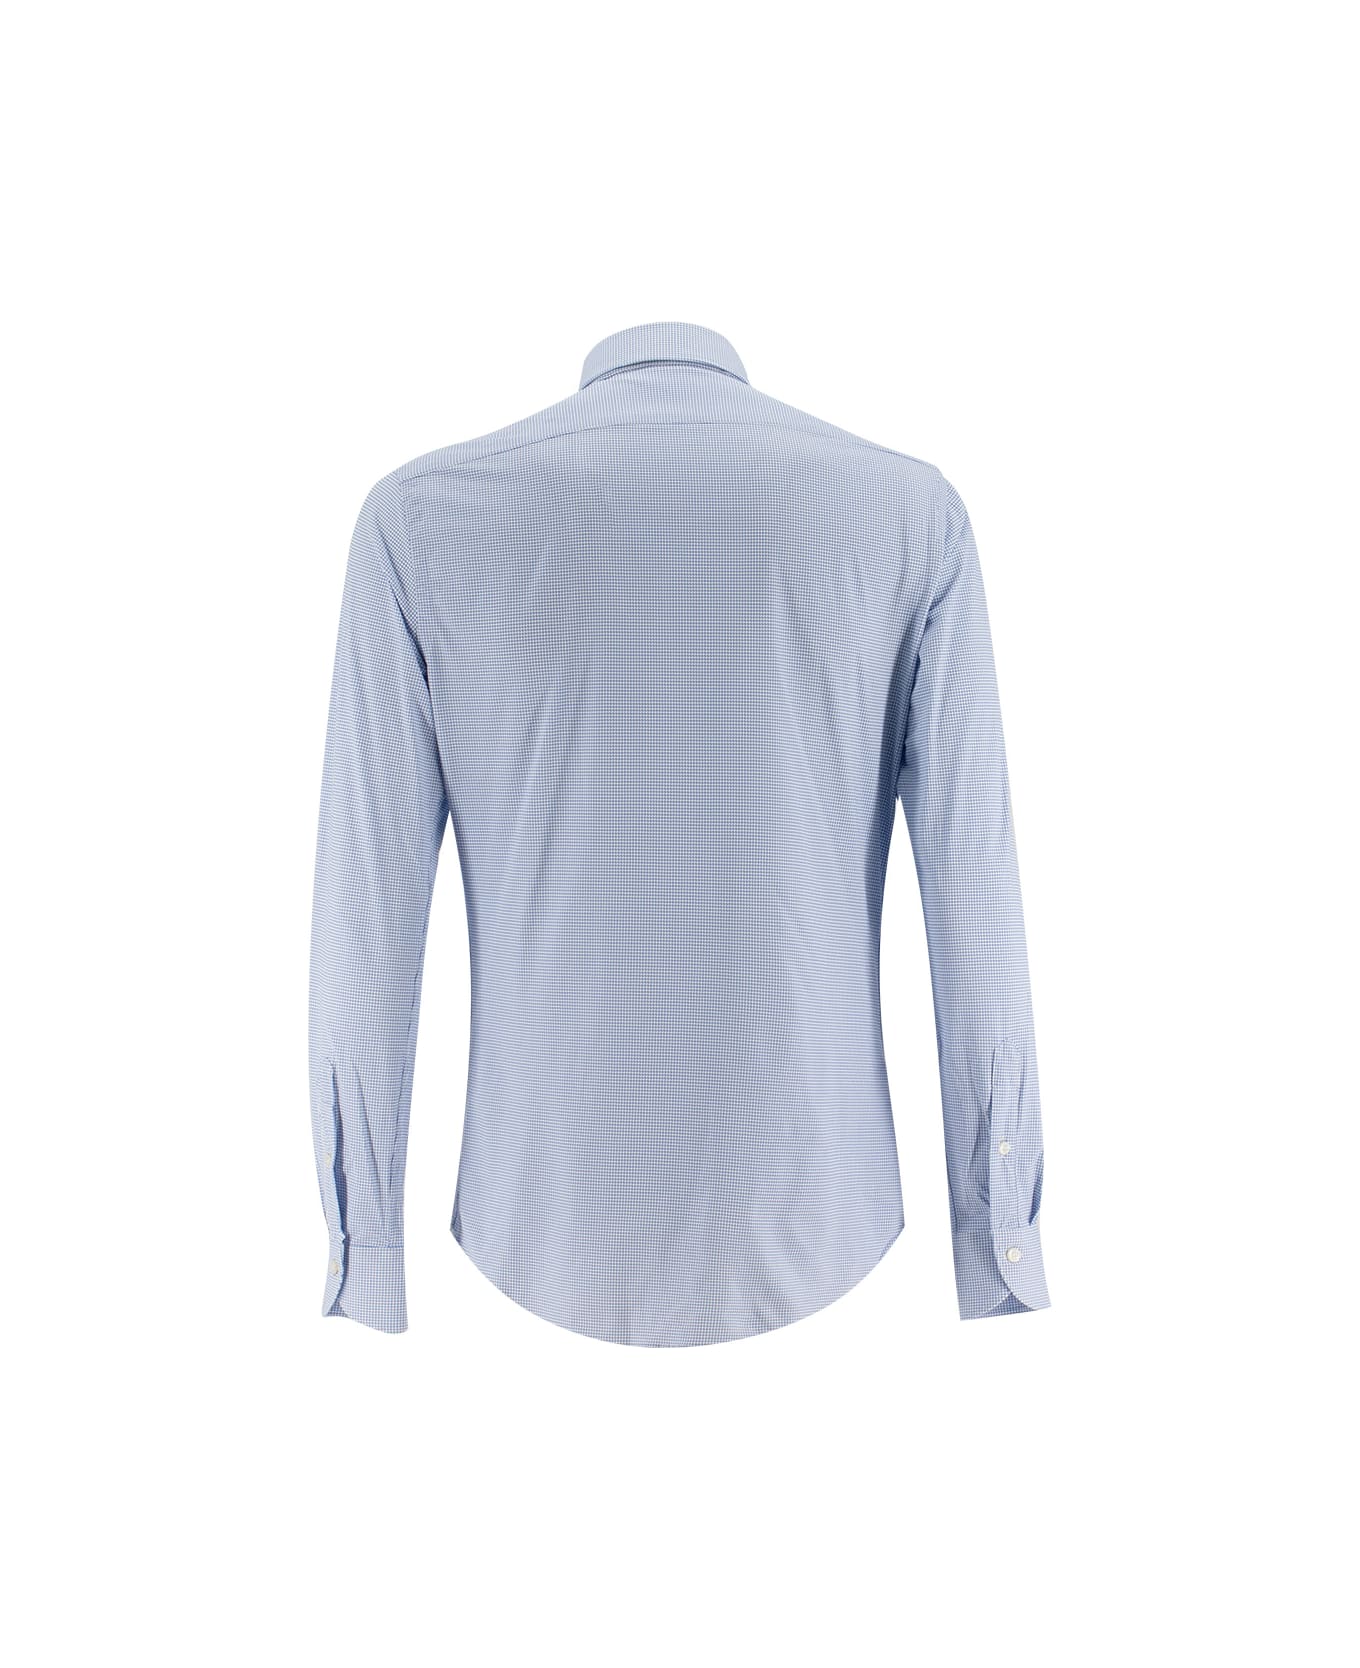 Xacus Shirt - WHITE  BLUE